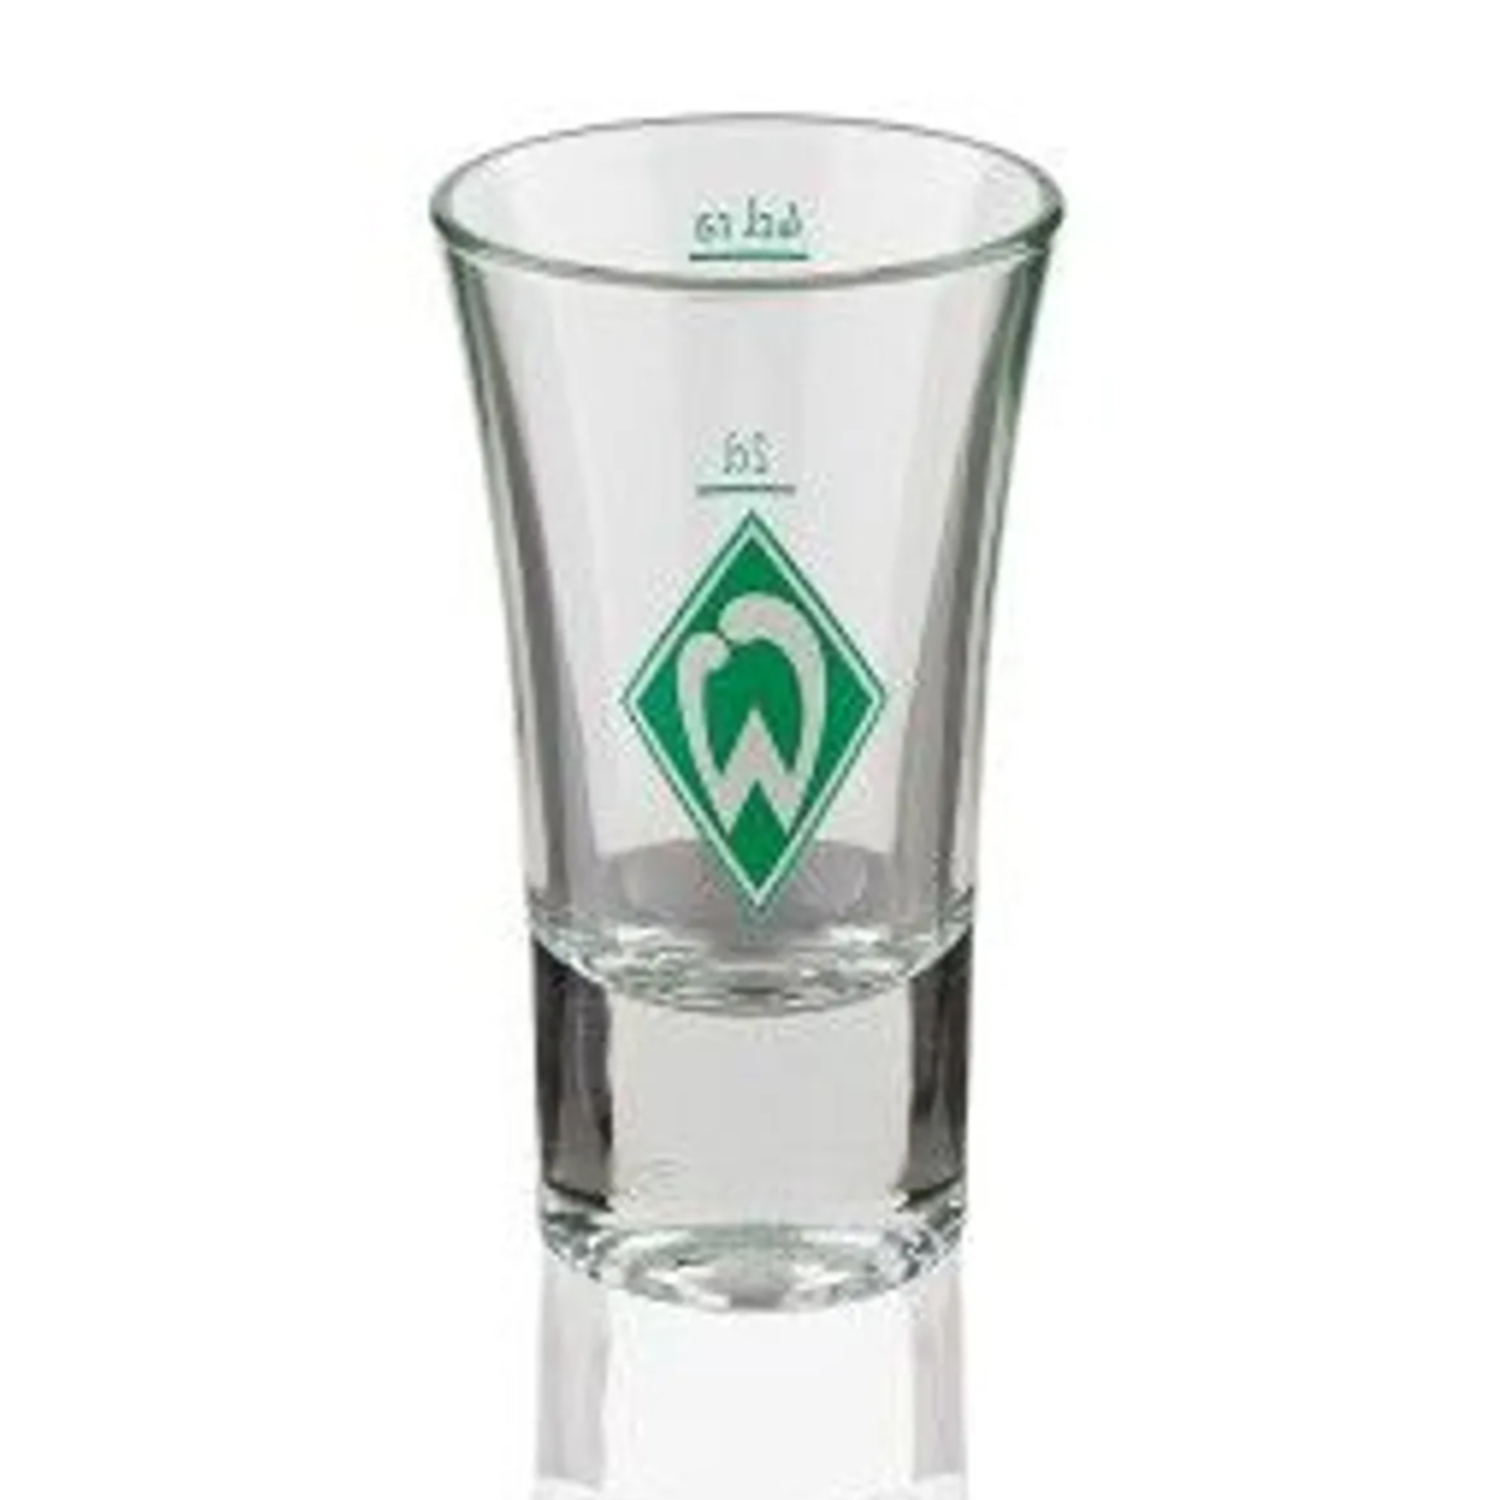 SV Werder Bremen - Schnapsglas Raute - transparent